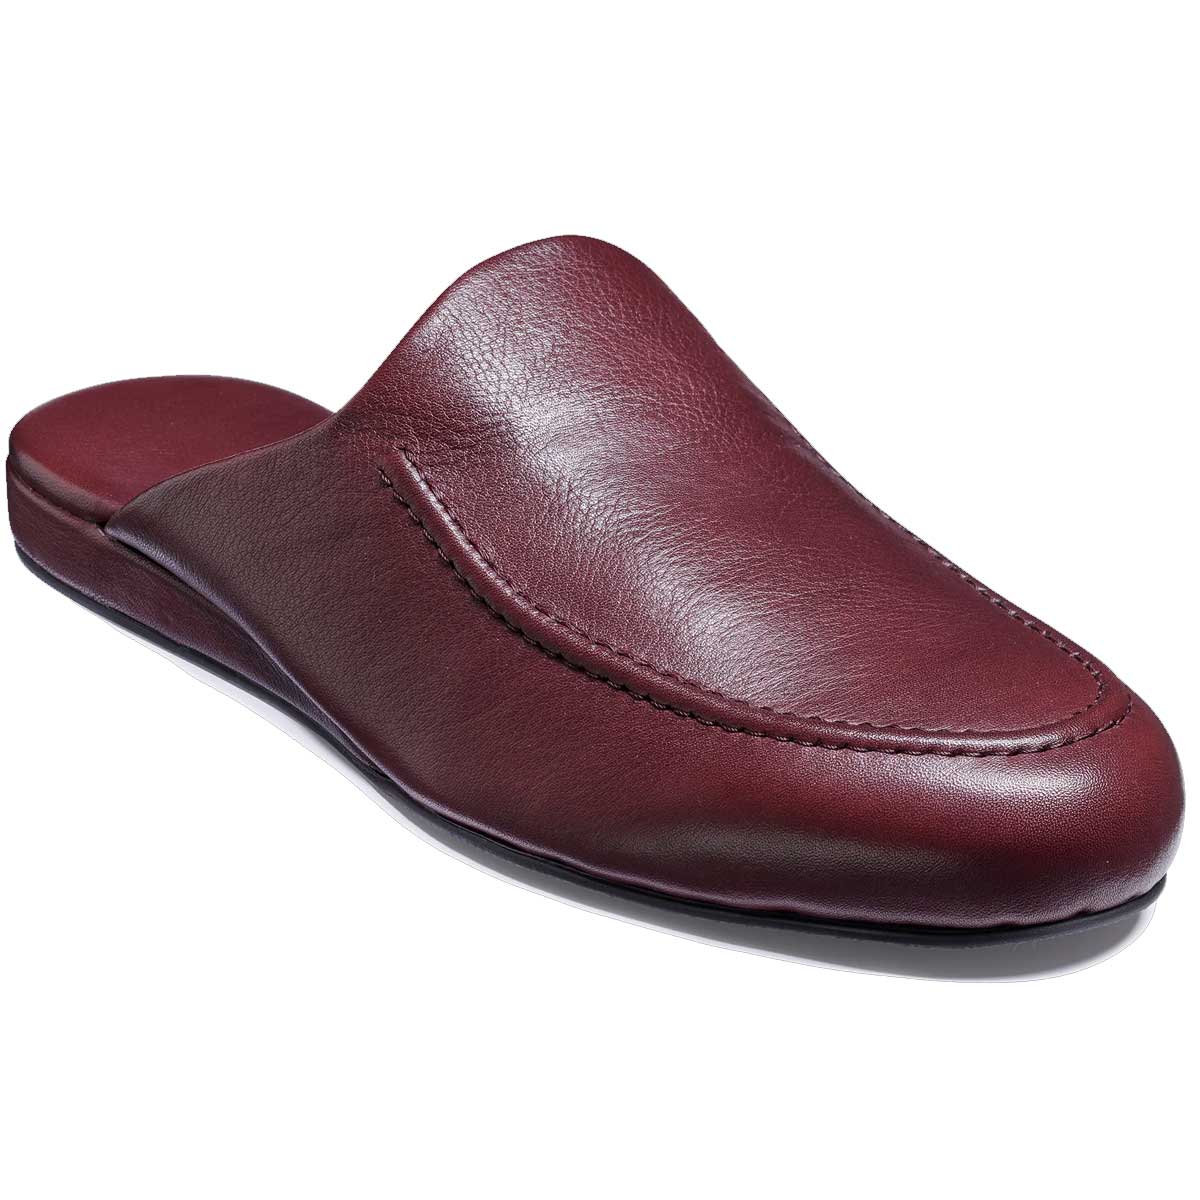 BARKER Aspen Slippers - Mens - Burgundy Leather